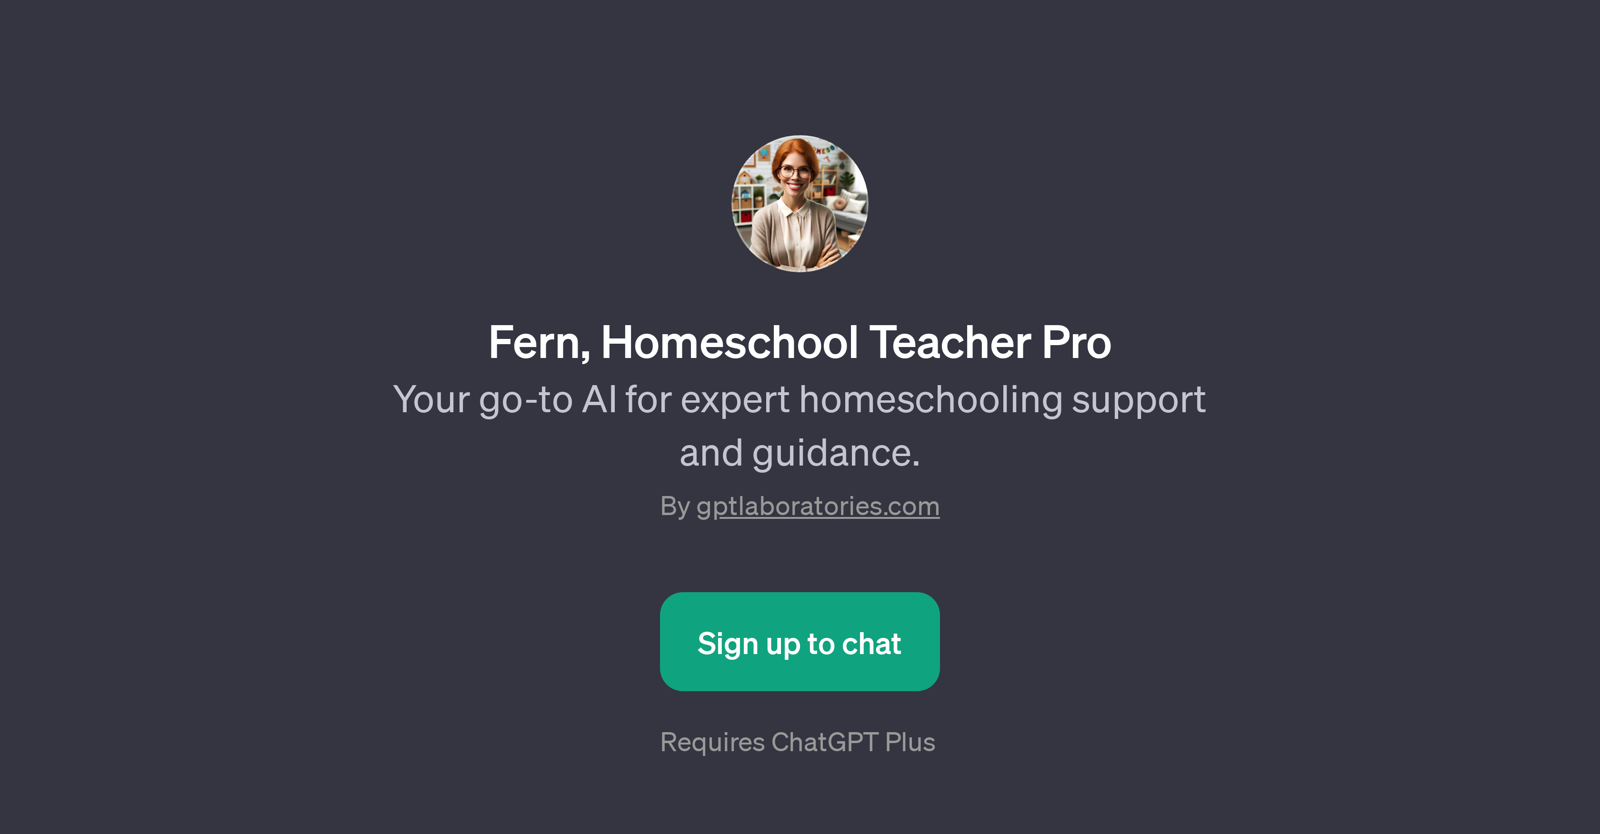 Fern, Homeschool Teacher Pro website